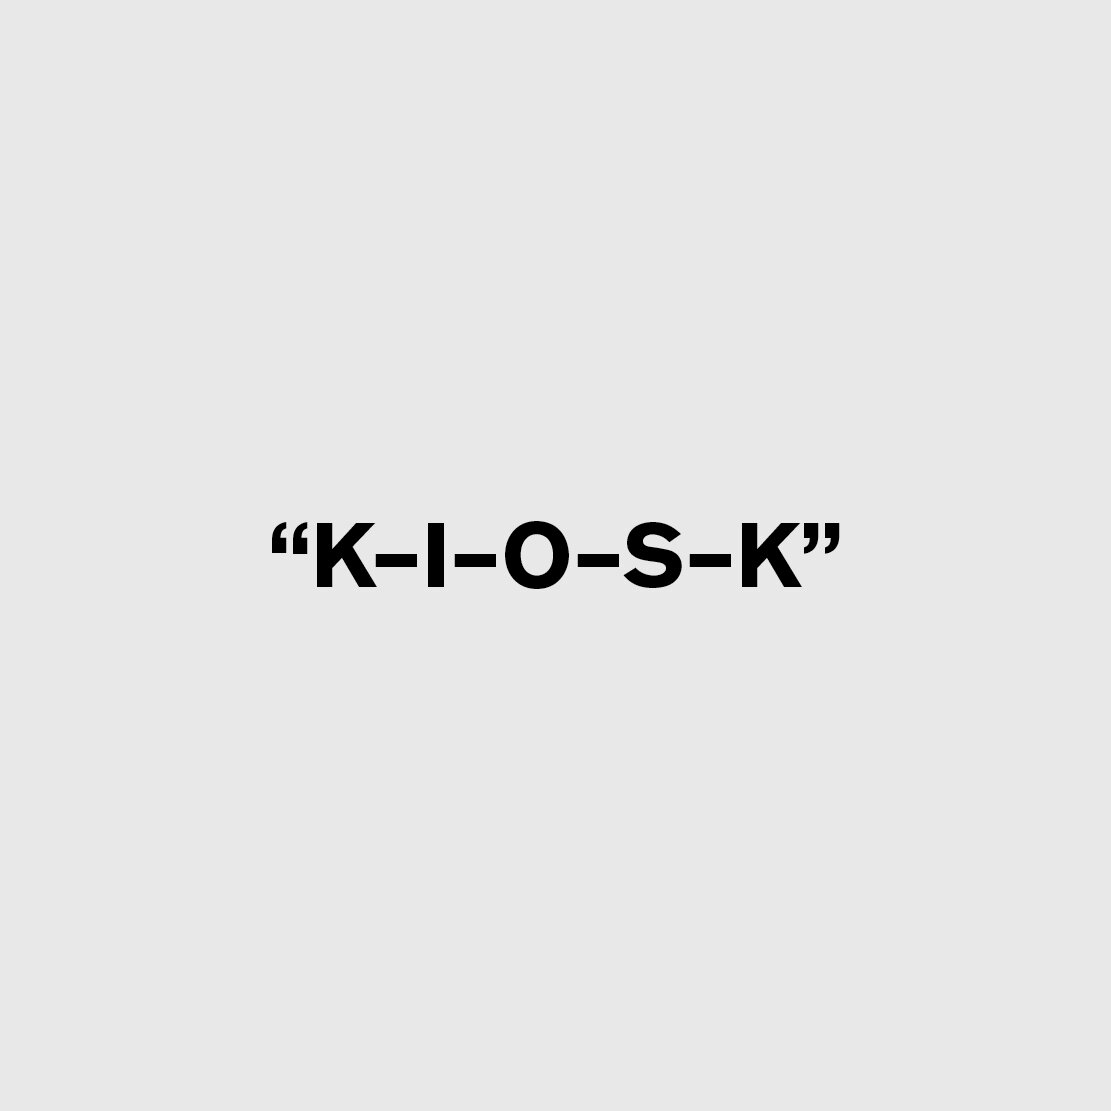 K-I-O-S-K Text